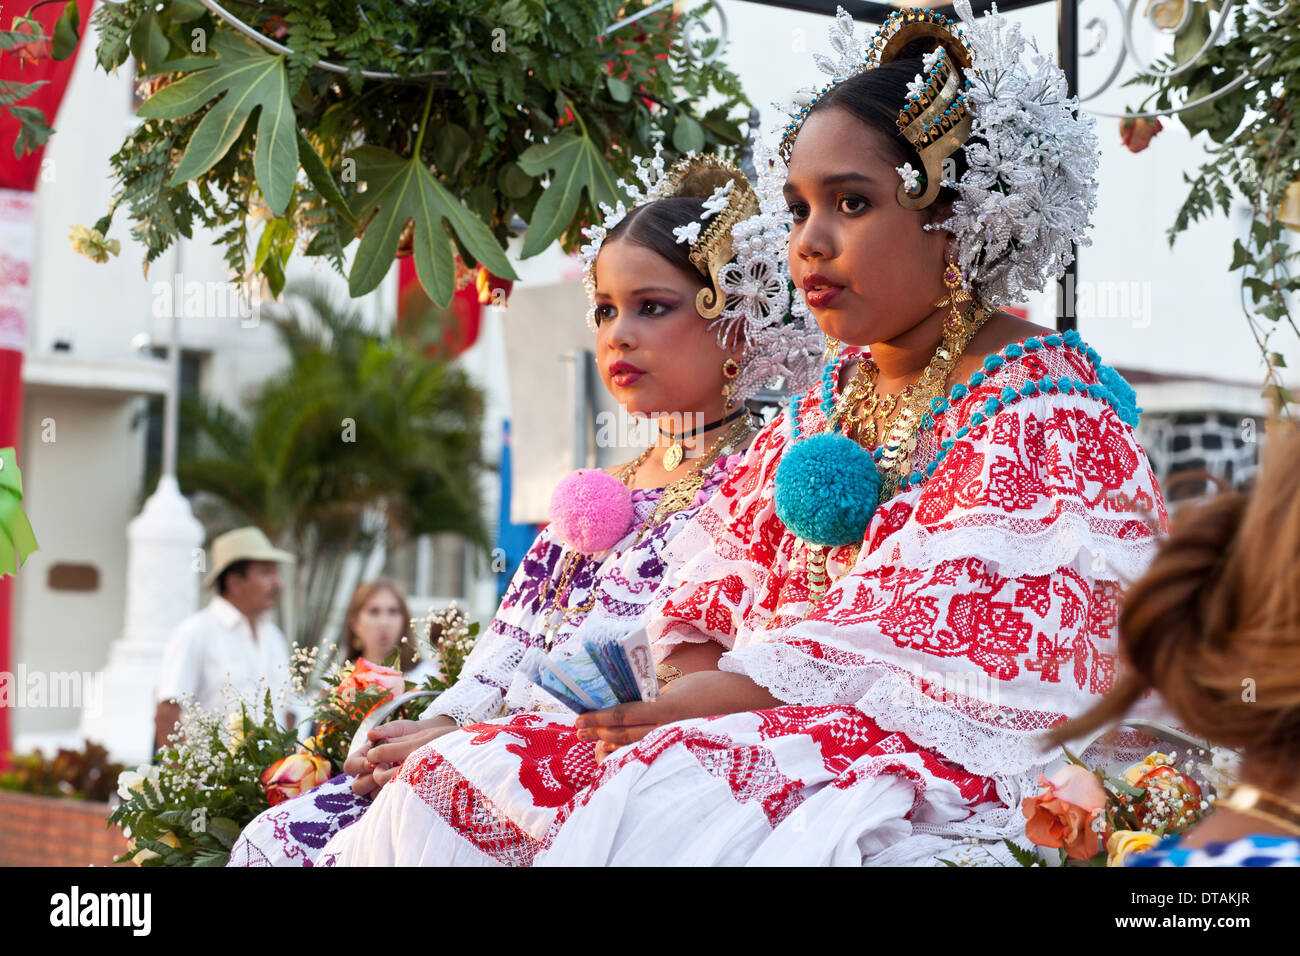 From the annual festival 'Desfile mil de polleras' (Thousand Polleras) in Las Tablas, Los Santos Province, Republic of Panama. Stock Photo